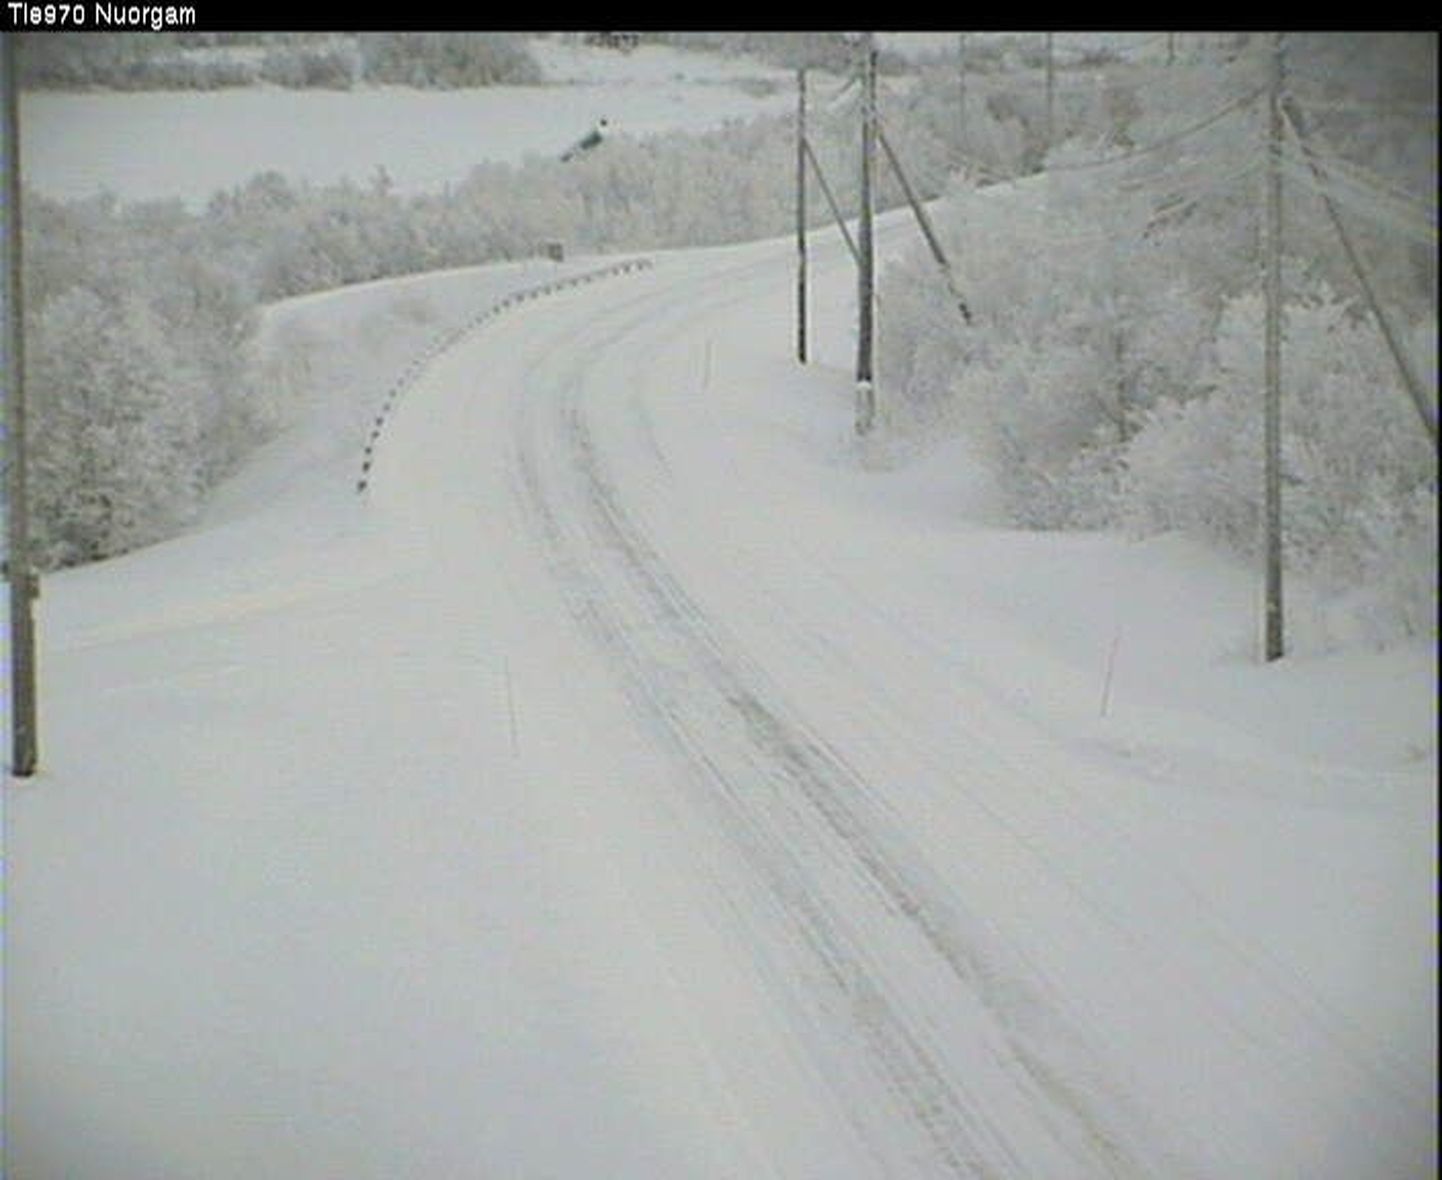 Utsjoelt Nuorgami suunduv maantee. Maanteekaamerast saadud teabe järgi mõõdeti seal täna kell 11.12 külma 18,4 kraadi.